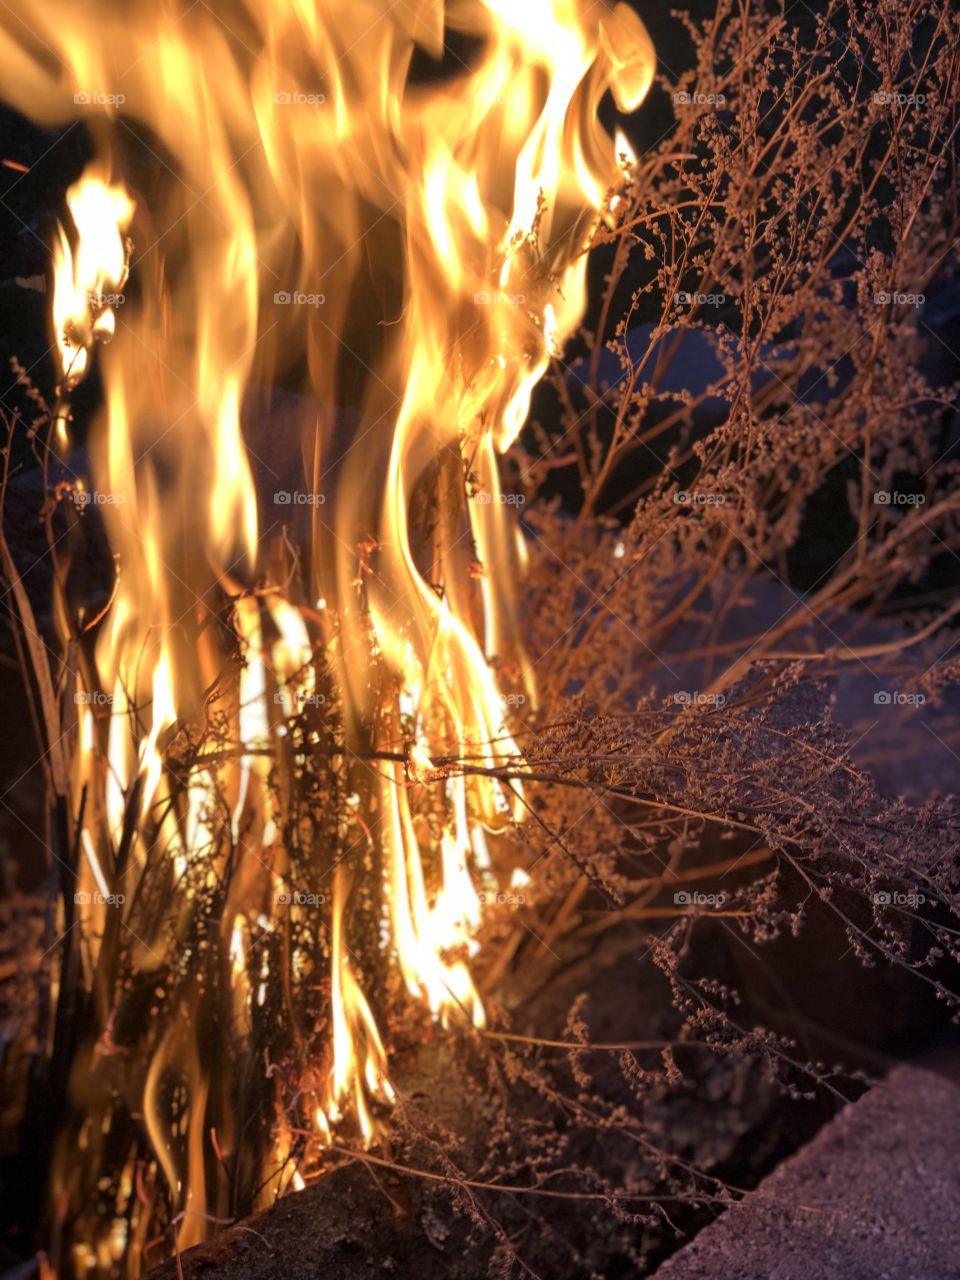 Burning bushes 